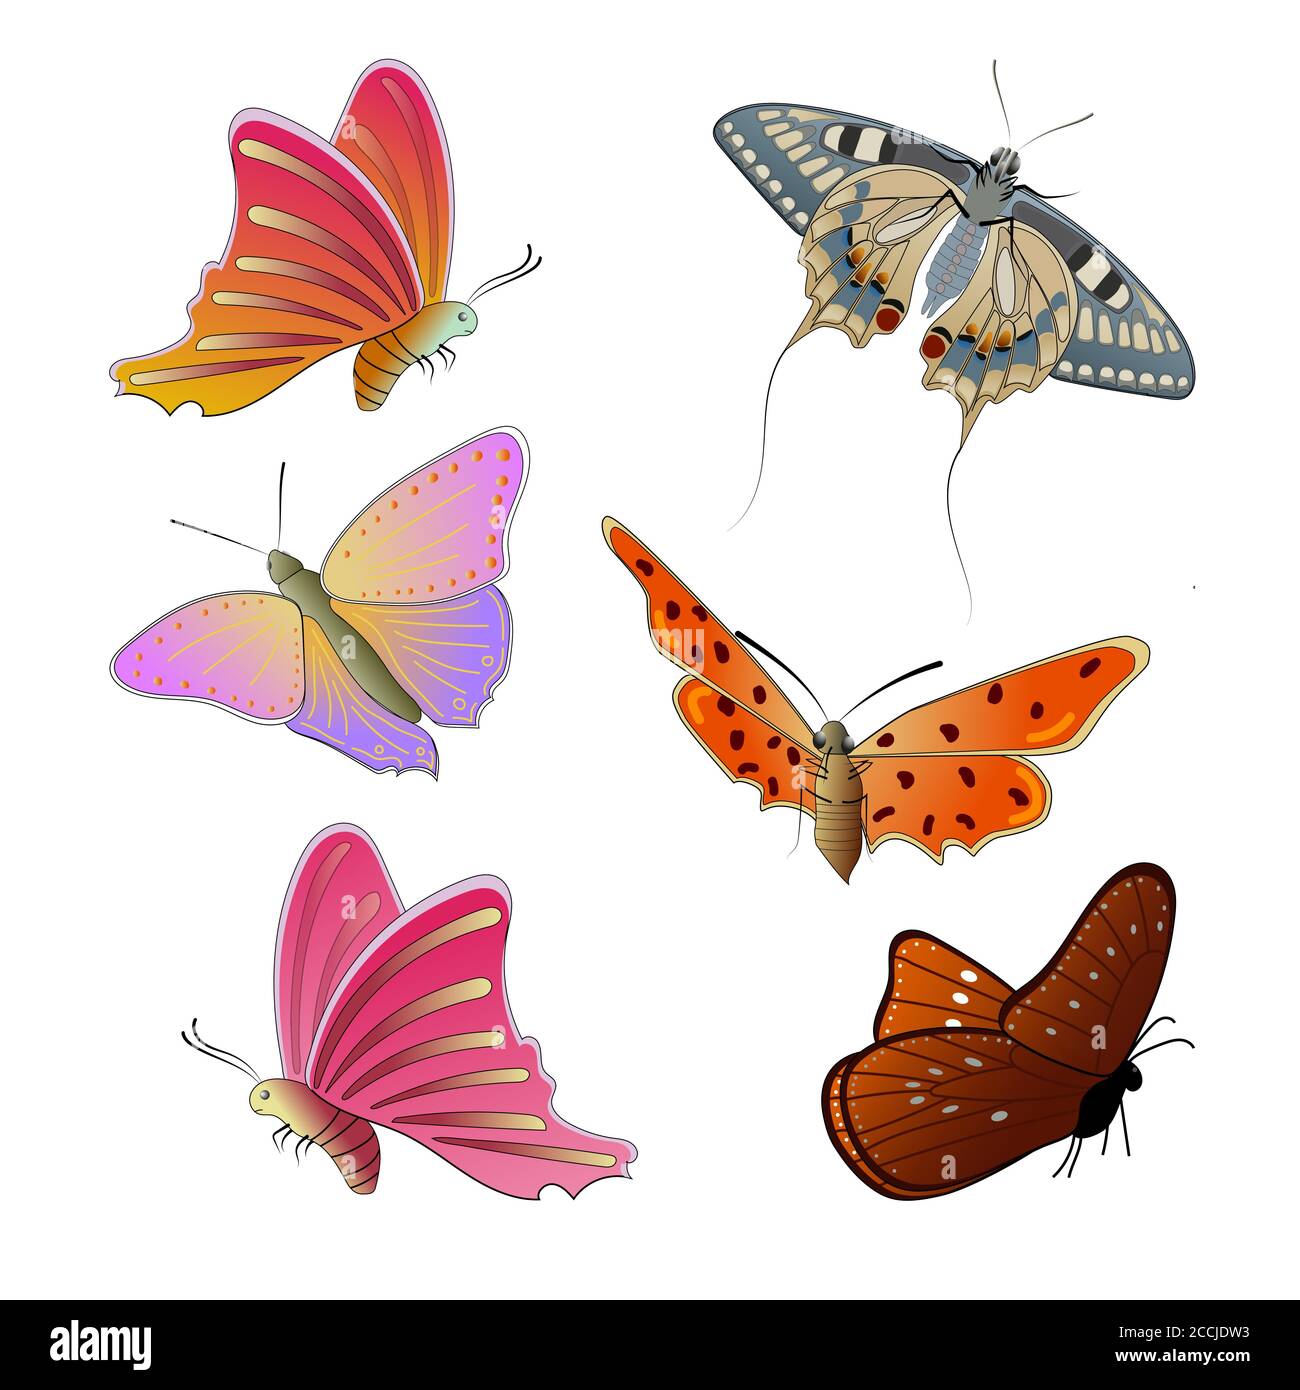 Set von bunten Schmetterlingen isoliert auf einem weißen Hintergrund. Fliegende  Schmetterlinge. Bunte Schmetterlinge mit schönen Mustern auf den Flügeln.  Vektor Stock-Vektorgrafik - Alamy